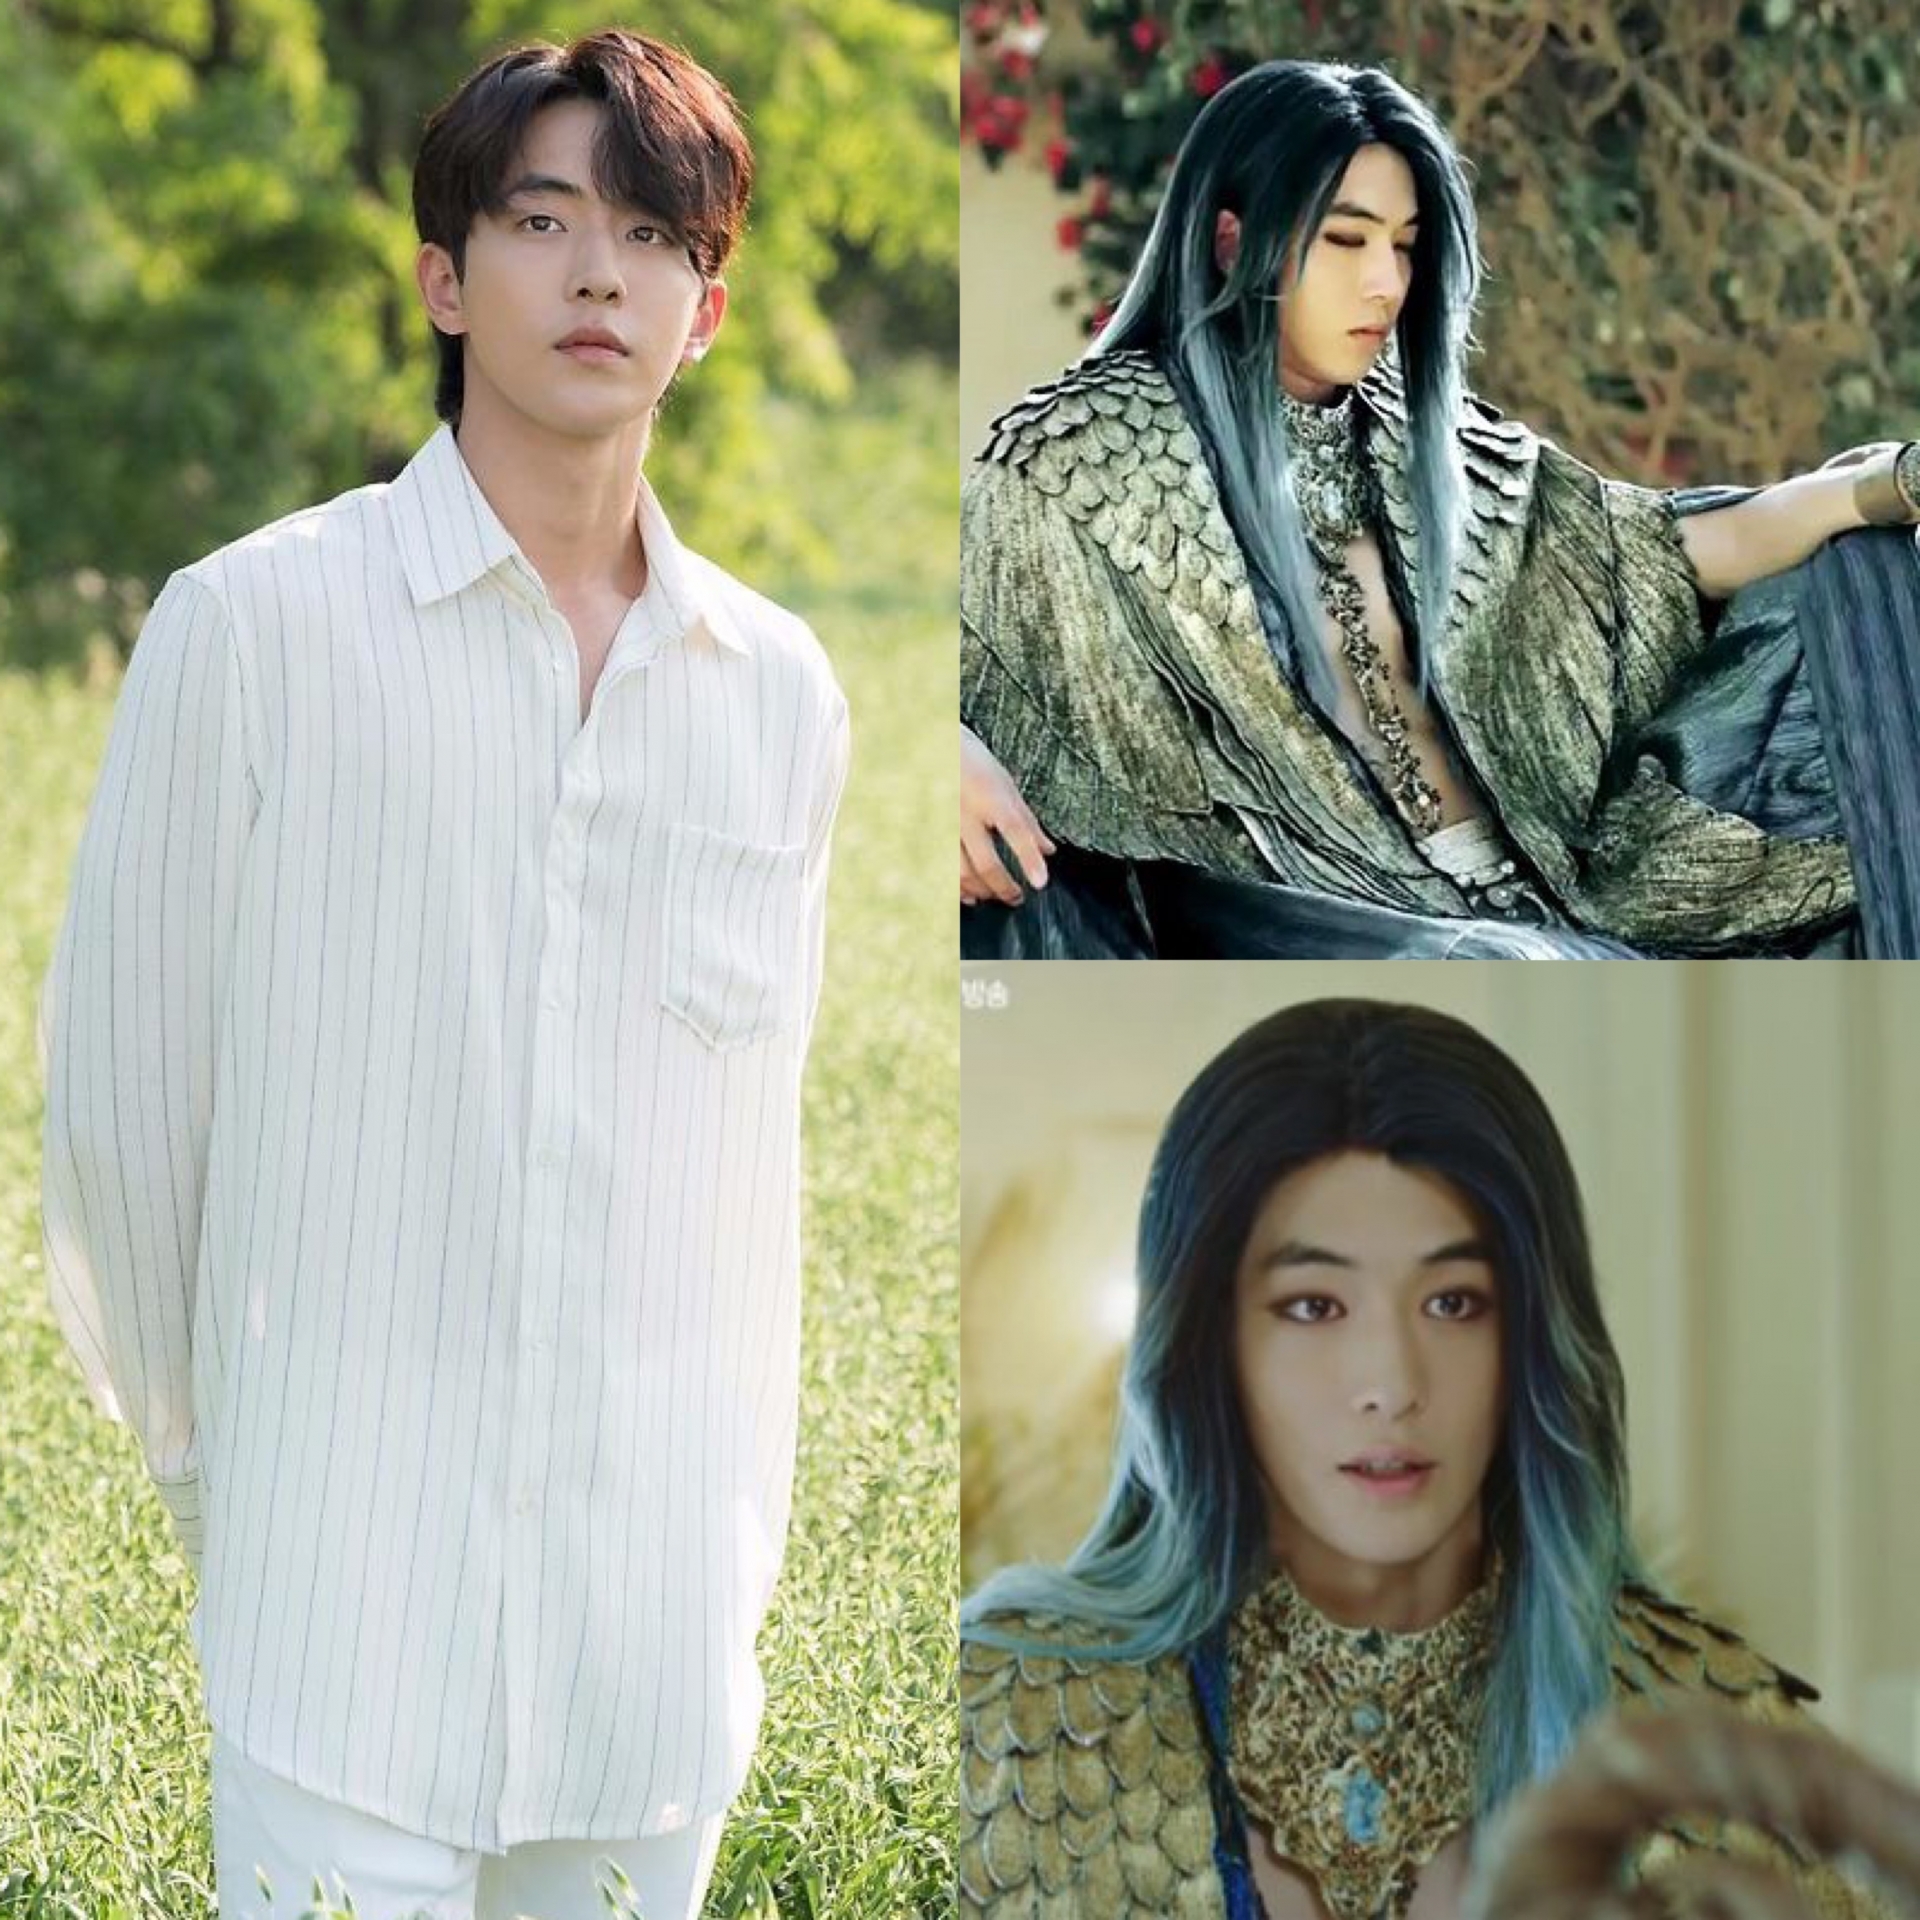 Thuỷ thần Ha Baek bên trái với diện mạo chuẩn 'chàng thơ' khiến fan 'gục ngã' khi nhìn thấy tạo hình cổ trang. Mái tóc xanh cùng loạt trang phục của Nam Joo Hyuk thật sự nhìn vào chỉ muốn 'trầm cảm'.